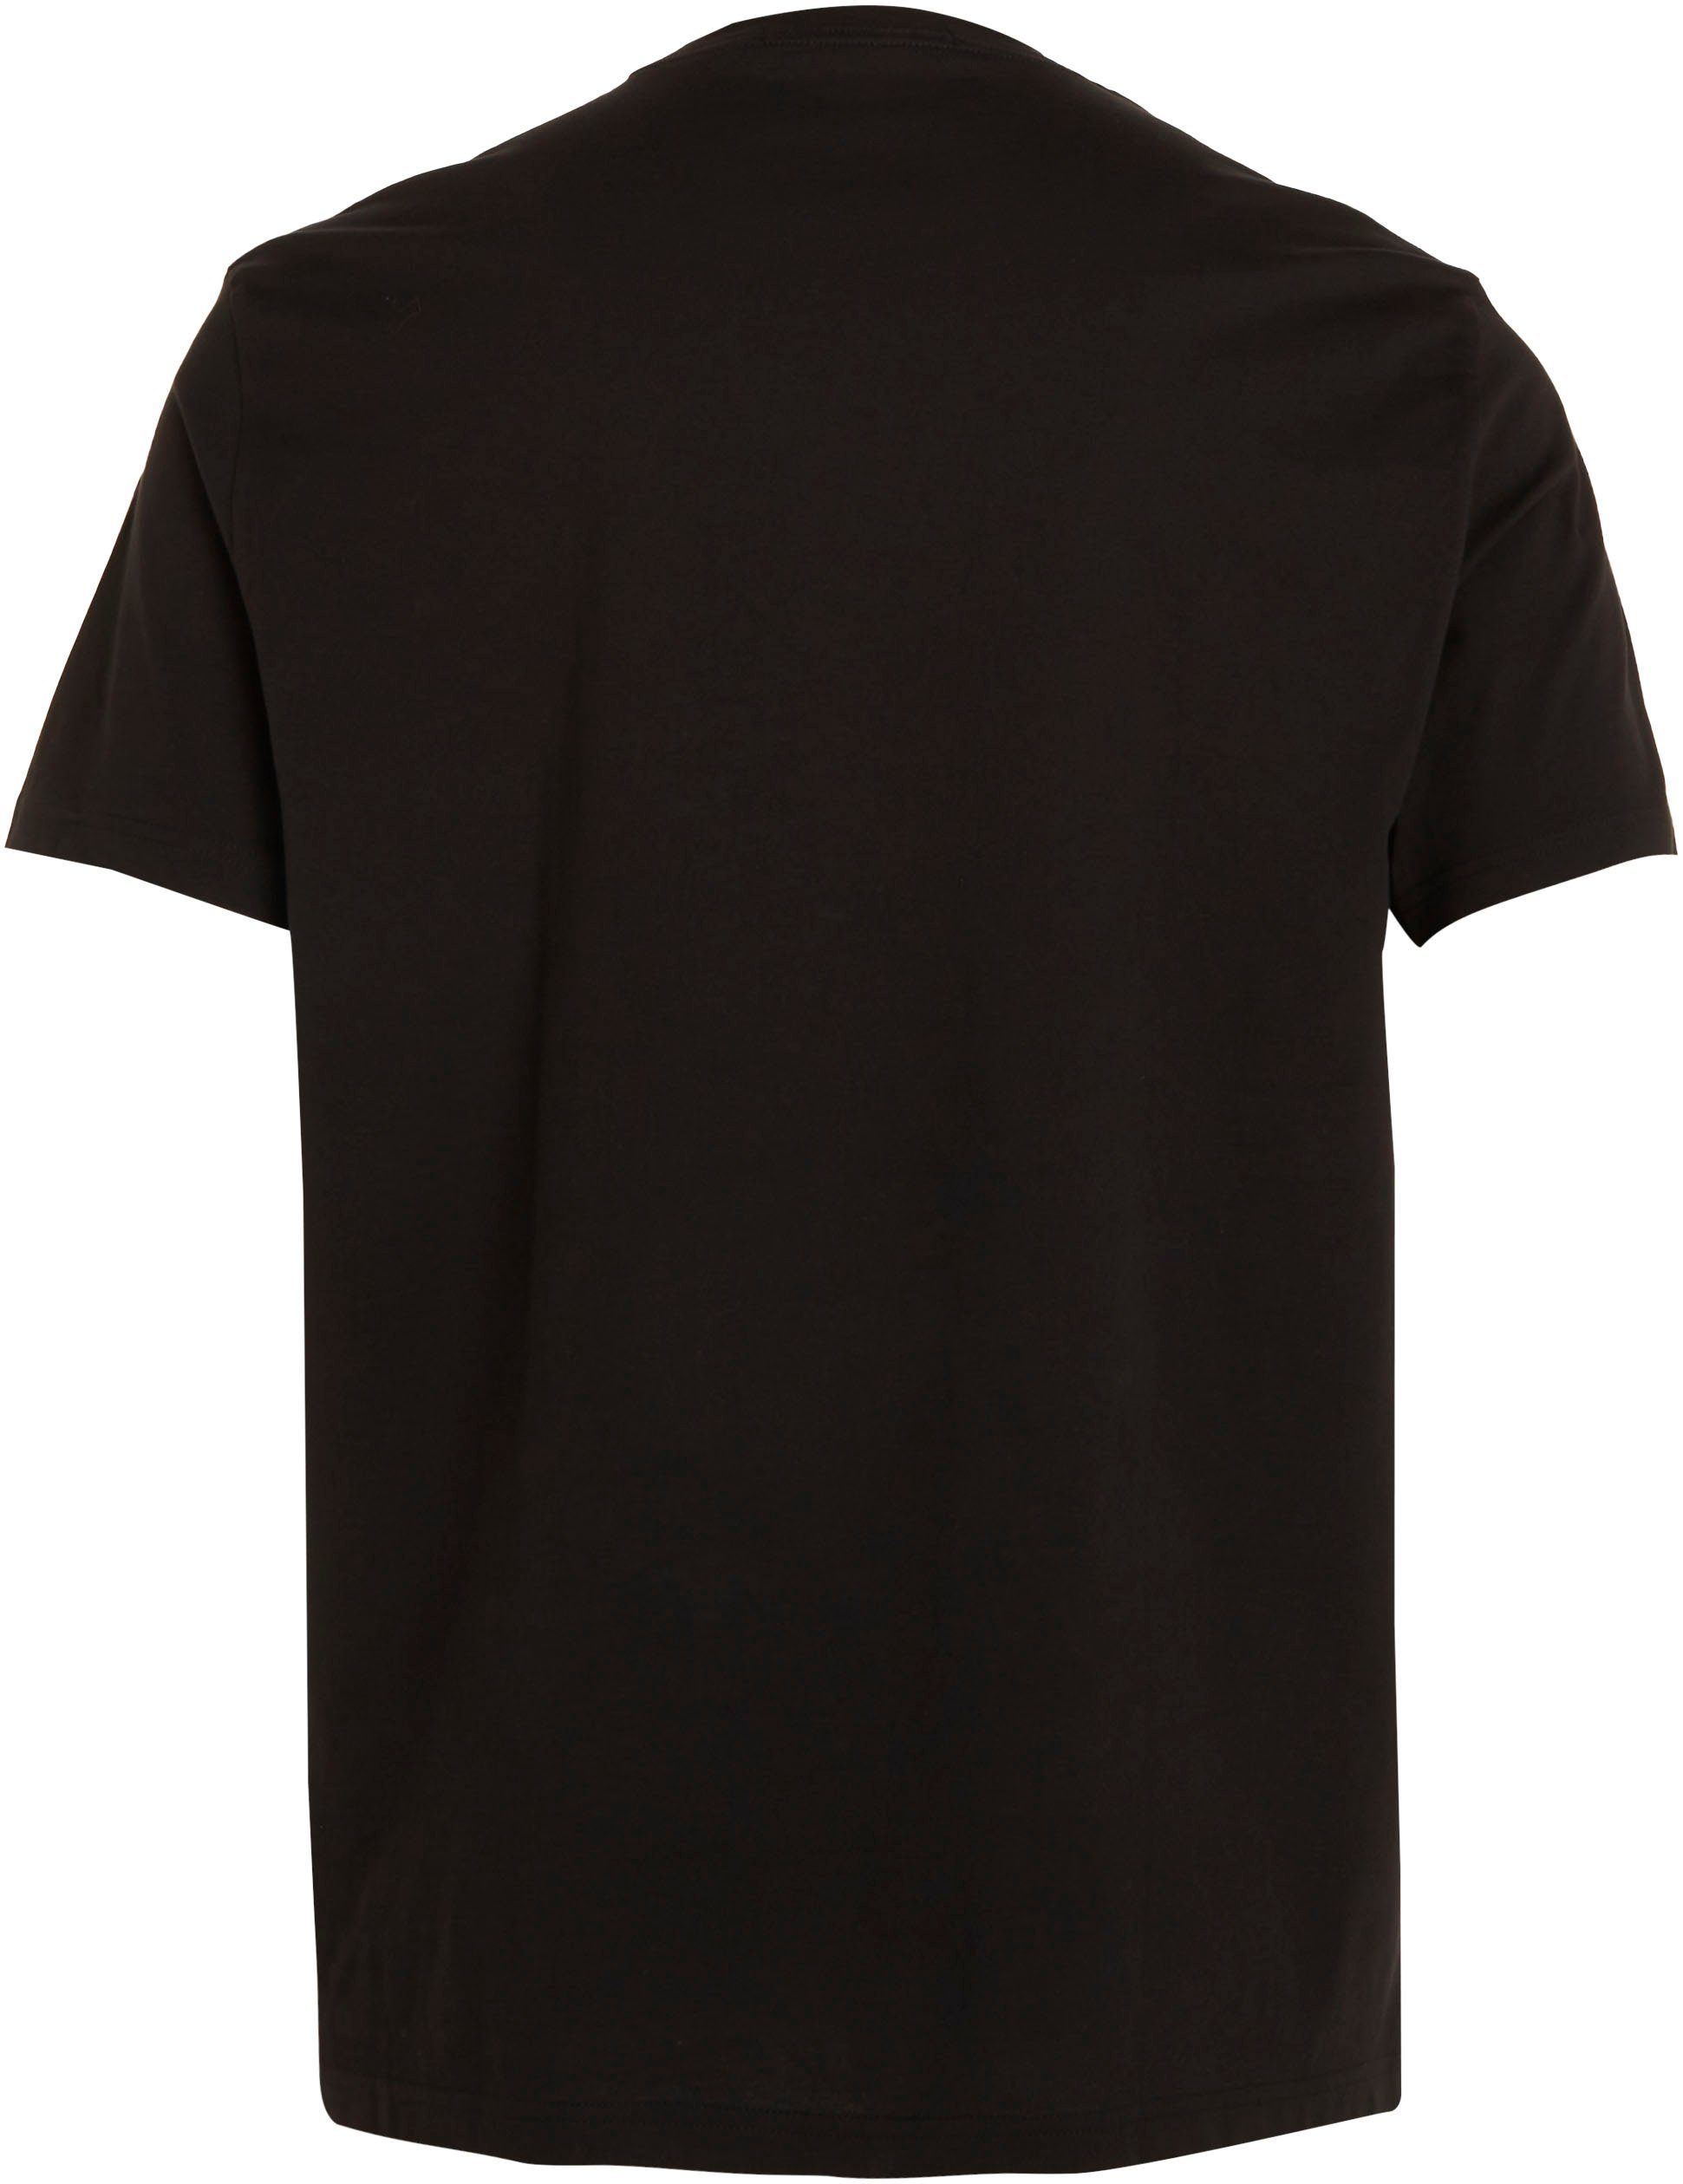 Calvin Klein Jeans Plus T-Shirt schwarz mit Rundhalsauschnitt